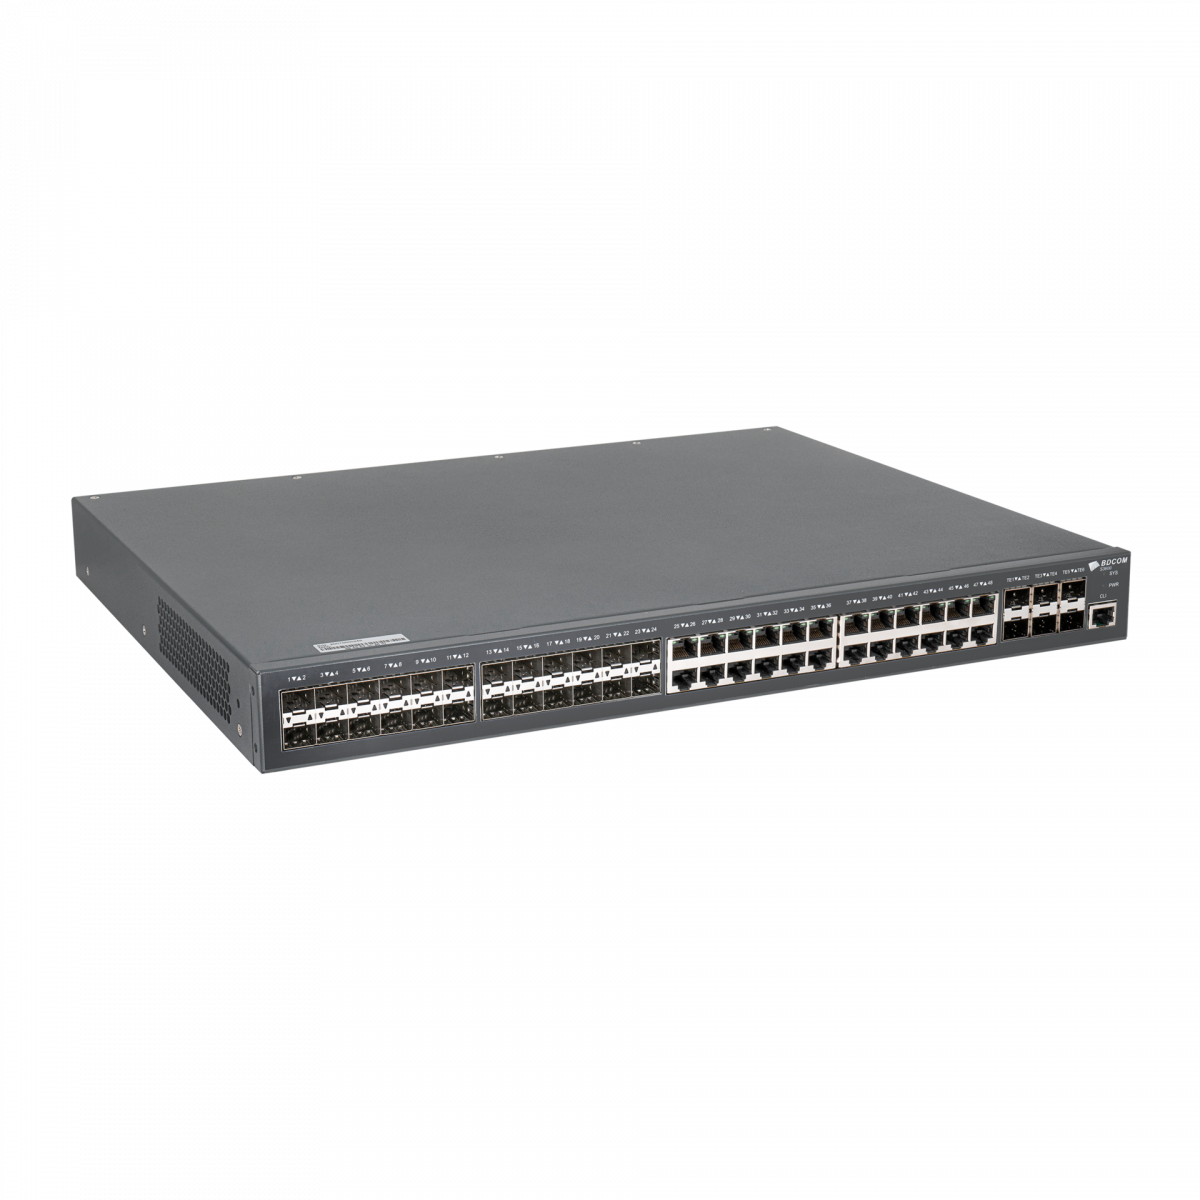 Управляемый коммутатор уровня 3 BDCOM S3900-48M6X, 24x10/100/1000Base-T, 24x100/1000Base-X SFP, 6x1/10GE SFP+, Hot Swap БП 1+1, в комплекте 1x PSU AC